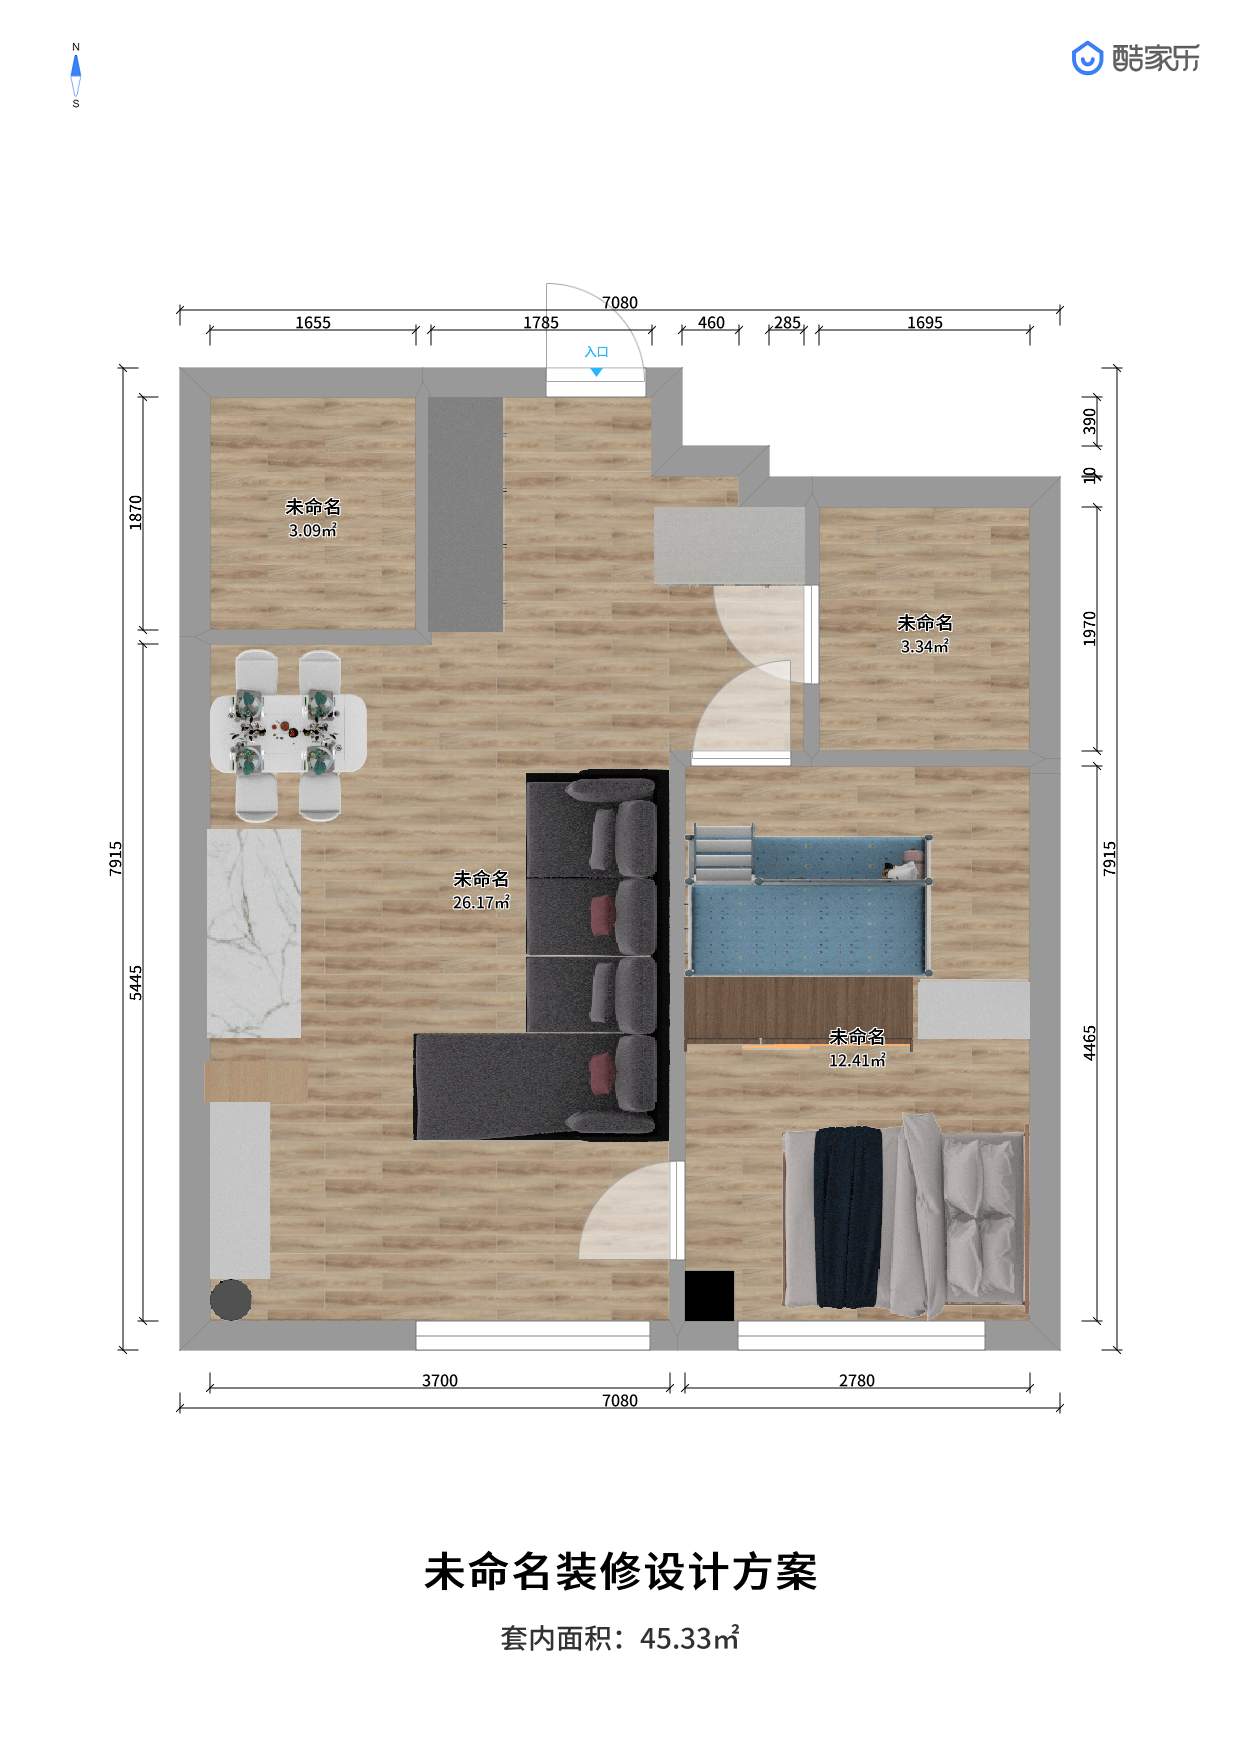 小时代 - 北欧风格两室两厅装修效果图 - 大光圈设计效果图 - 躺平设计家